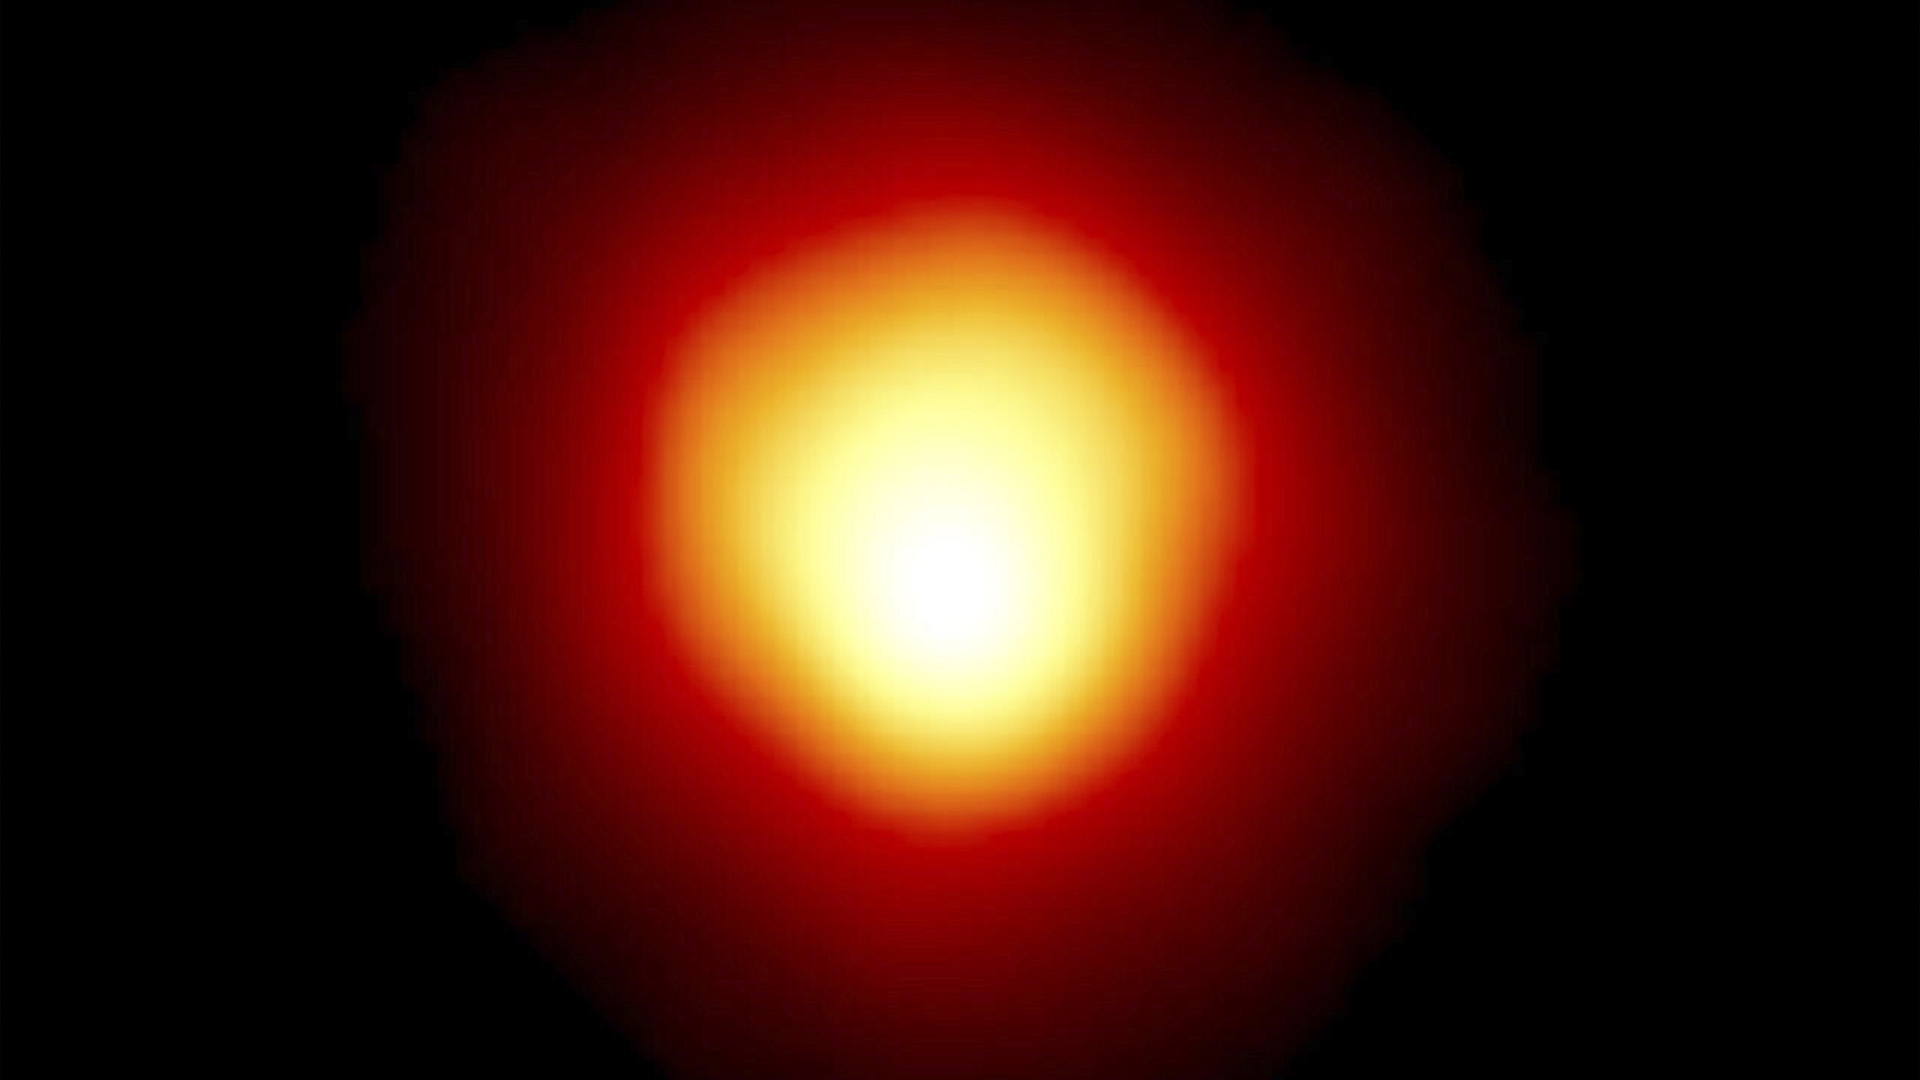 Cette image prise par le télescope spatial Hubble et publiée par la NASA le 10 août 2020 montre l'étoile Alpha Orionis, ou Bételgeuse, une supergéante rouge. Cette étoile, l'une des plus grandes et des plus brillantes du ciel nocturne, disparaîtra momentanément lorsqu'un astéroïde passera devant elle, le lundi 11 décembre 2023 en fin de journée et mardi en début de journée. Cet événement devrait être visible par des millions de personnes le long d'un étroit corridor s'étendant du Tadjikistan et de l'Arménie, en Asie centrale, à la Turquie, la Grèce, l'Italie et l'Espagne, jusqu'à Miami et les Florida Keys, et enfin le Mexique. 